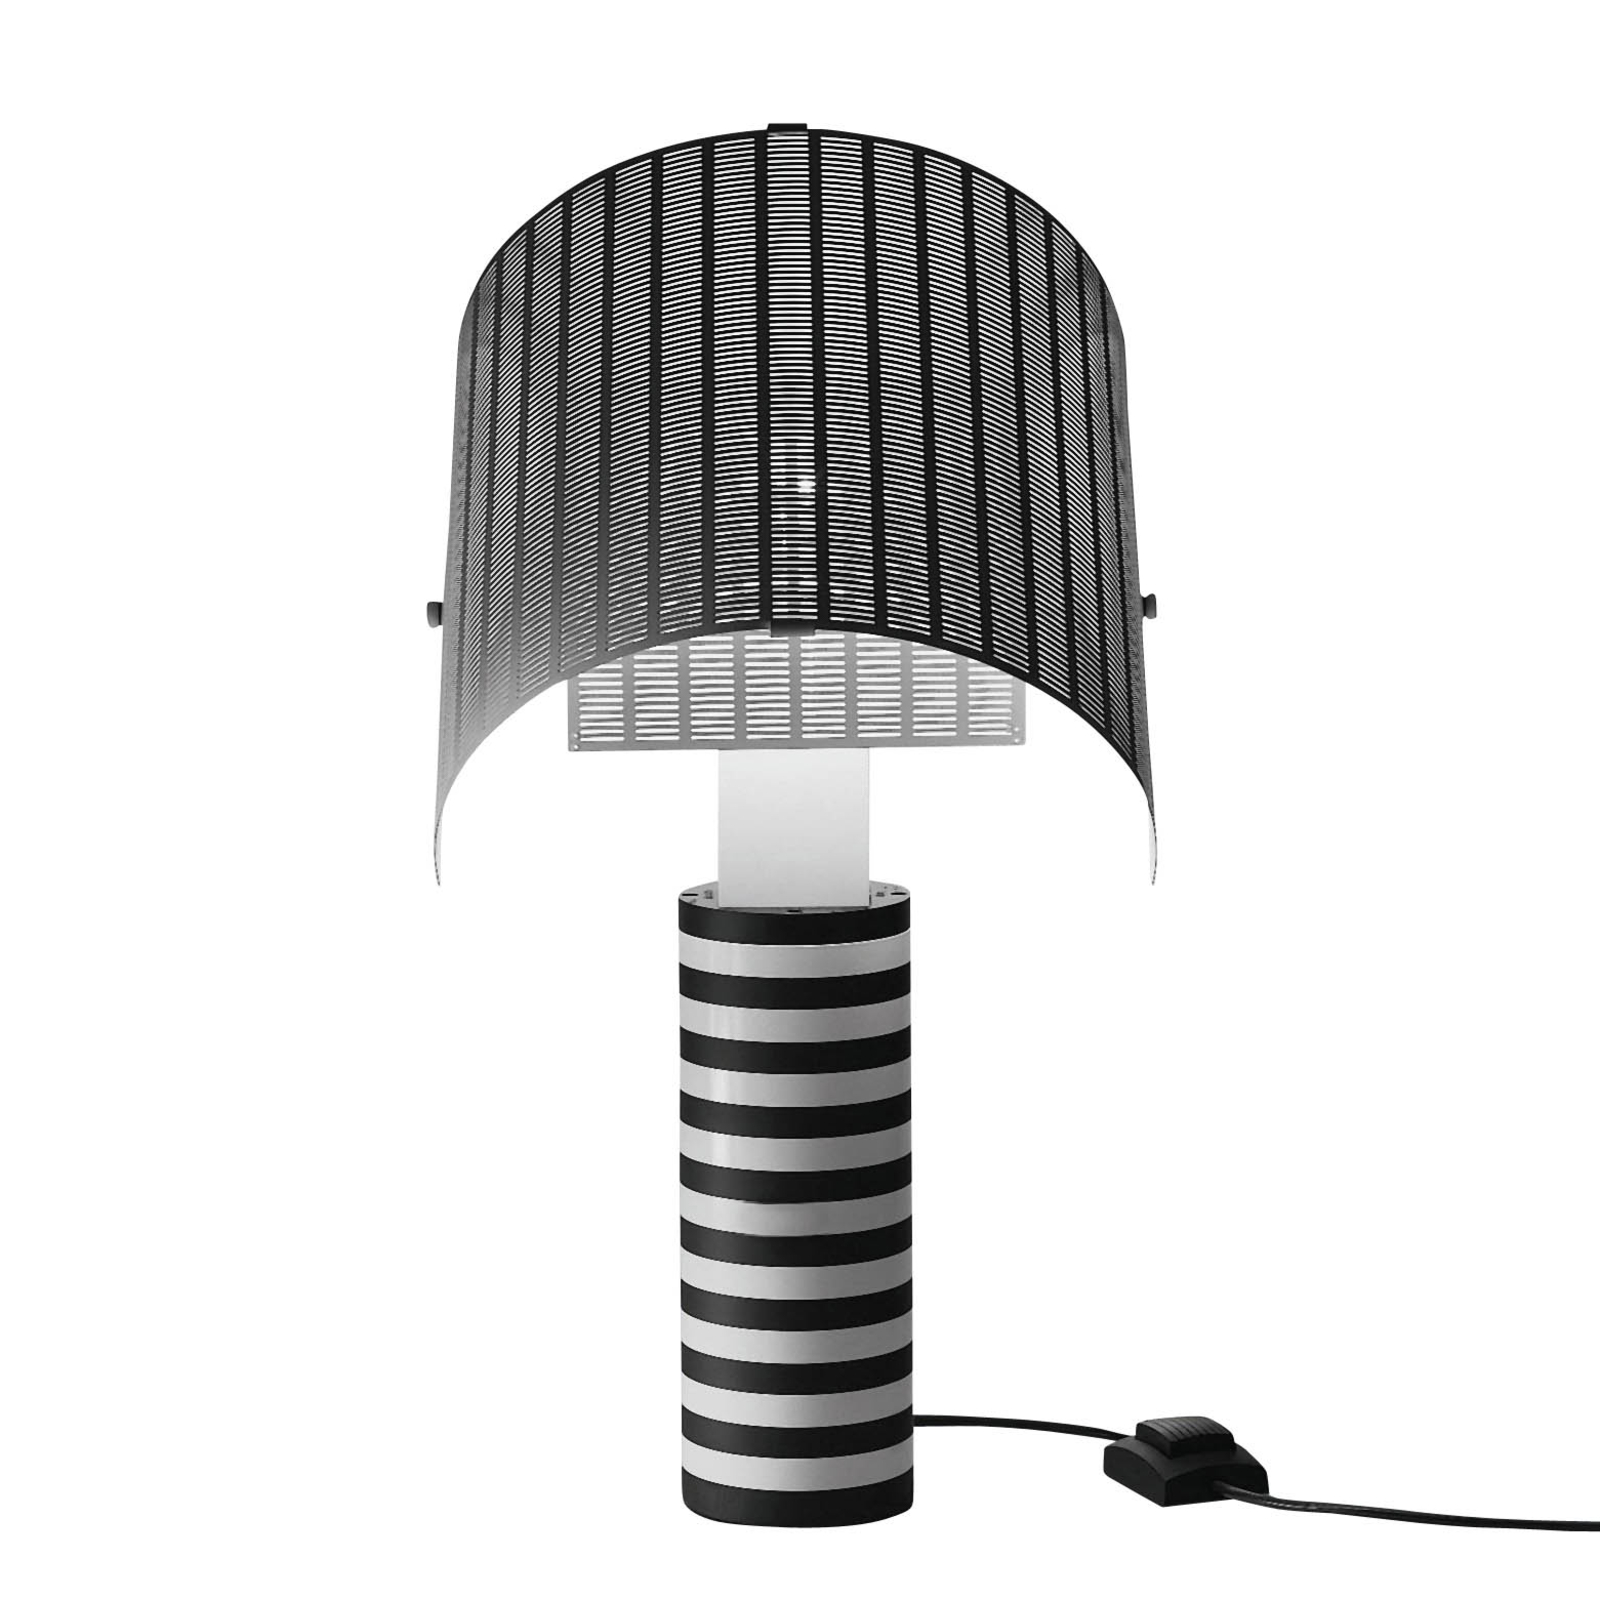 Artemide Shogun table lamp, adjustable lampshade